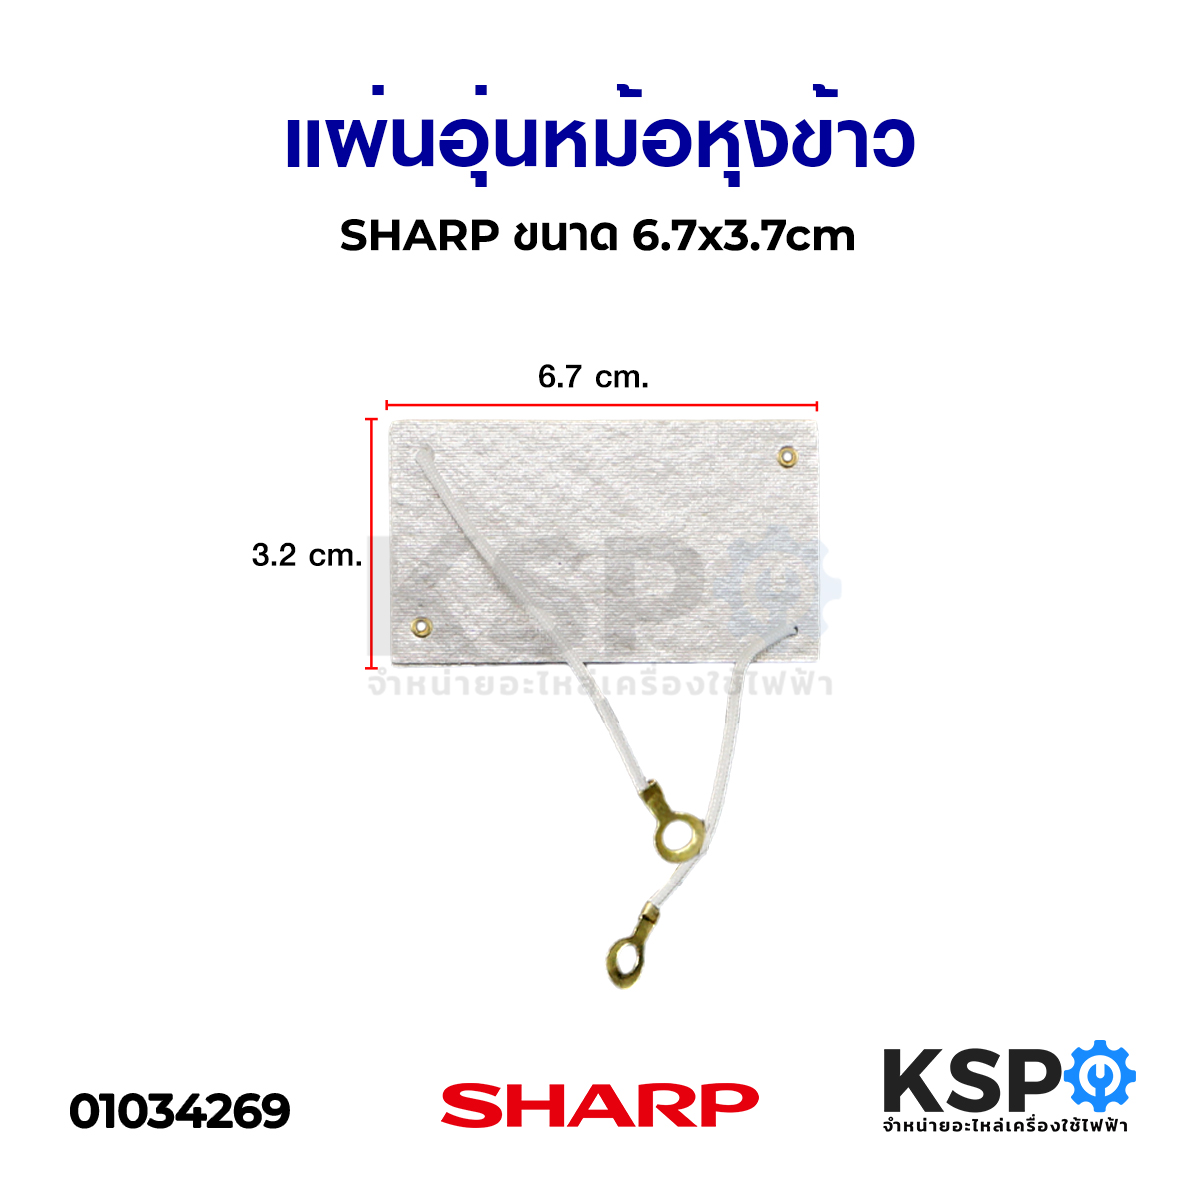 แผ่นอุ่นหม้อหุงข้าว SHARP ชาร์ป ขนาด 6.7x3.7cm อะไหล่หม้อหุงข้าว